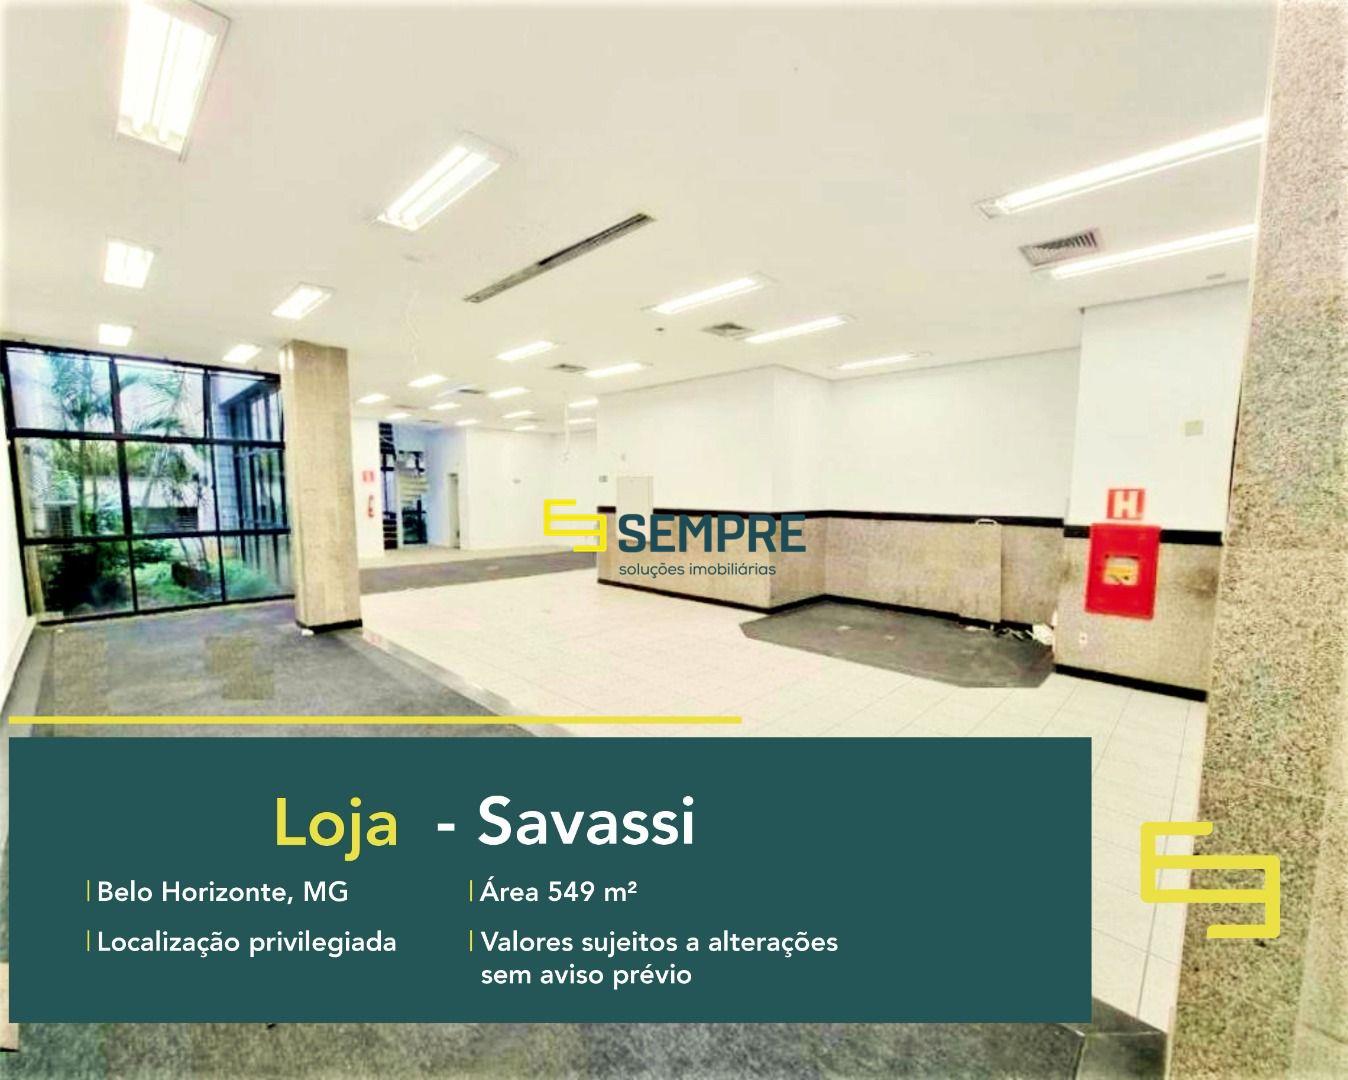 Loja para alugar na Savassi em BH em excelente localização. O Estabelecimento comercial para alugar, conta sobretudo, com área de 594 m².